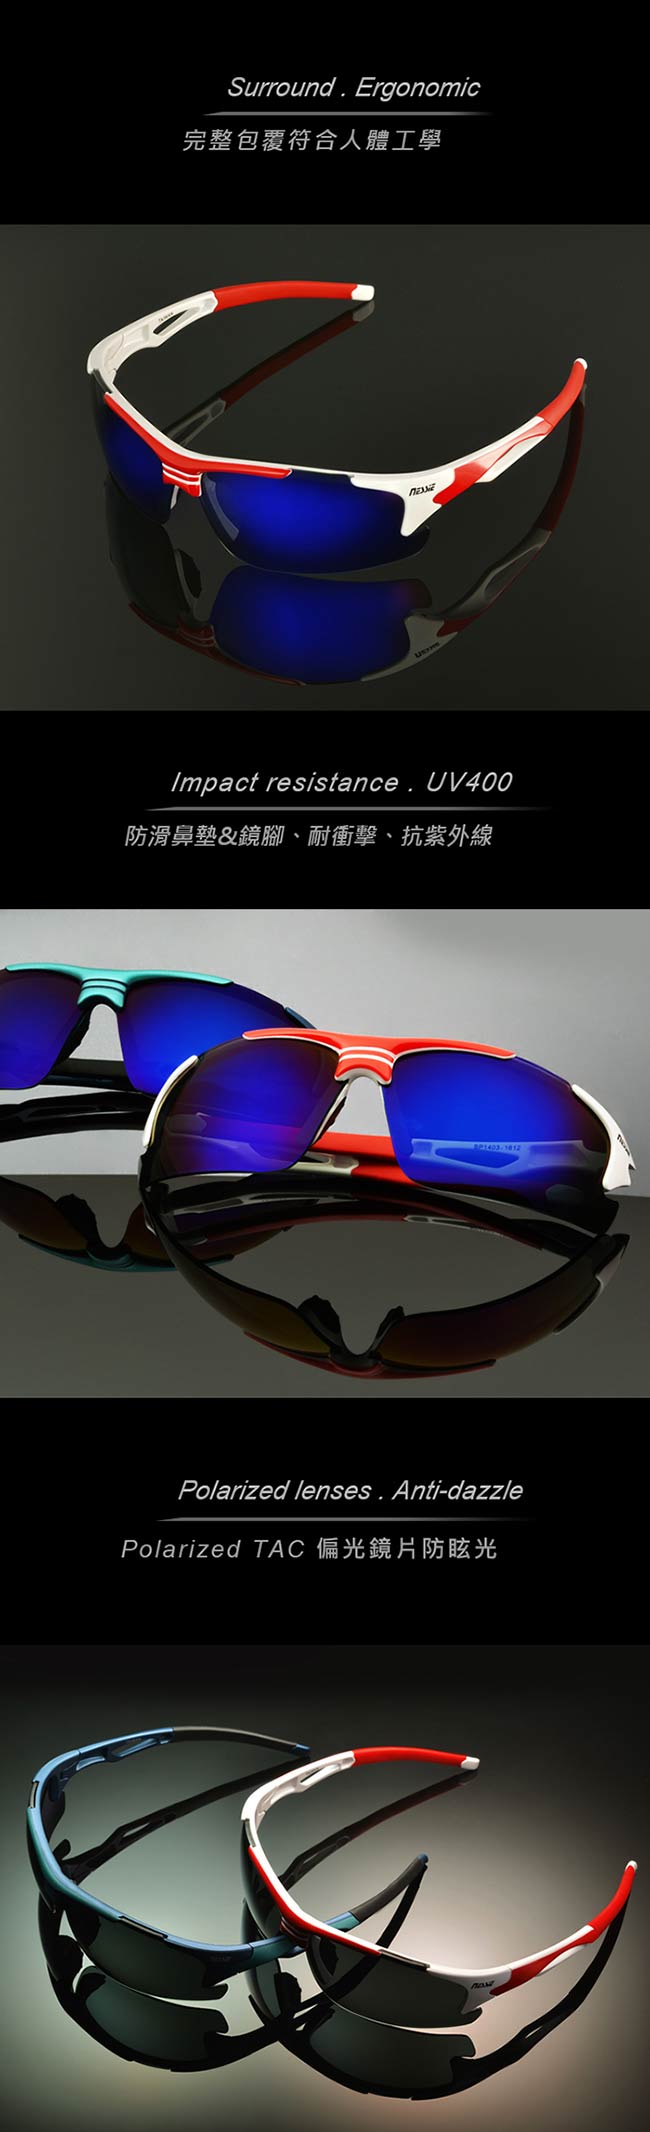 【Nessie尼斯眼鏡】偏光太陽眼鏡-運動款(亮白紅)贈眼鏡盒 抗UV濾藍光偏光鏡片